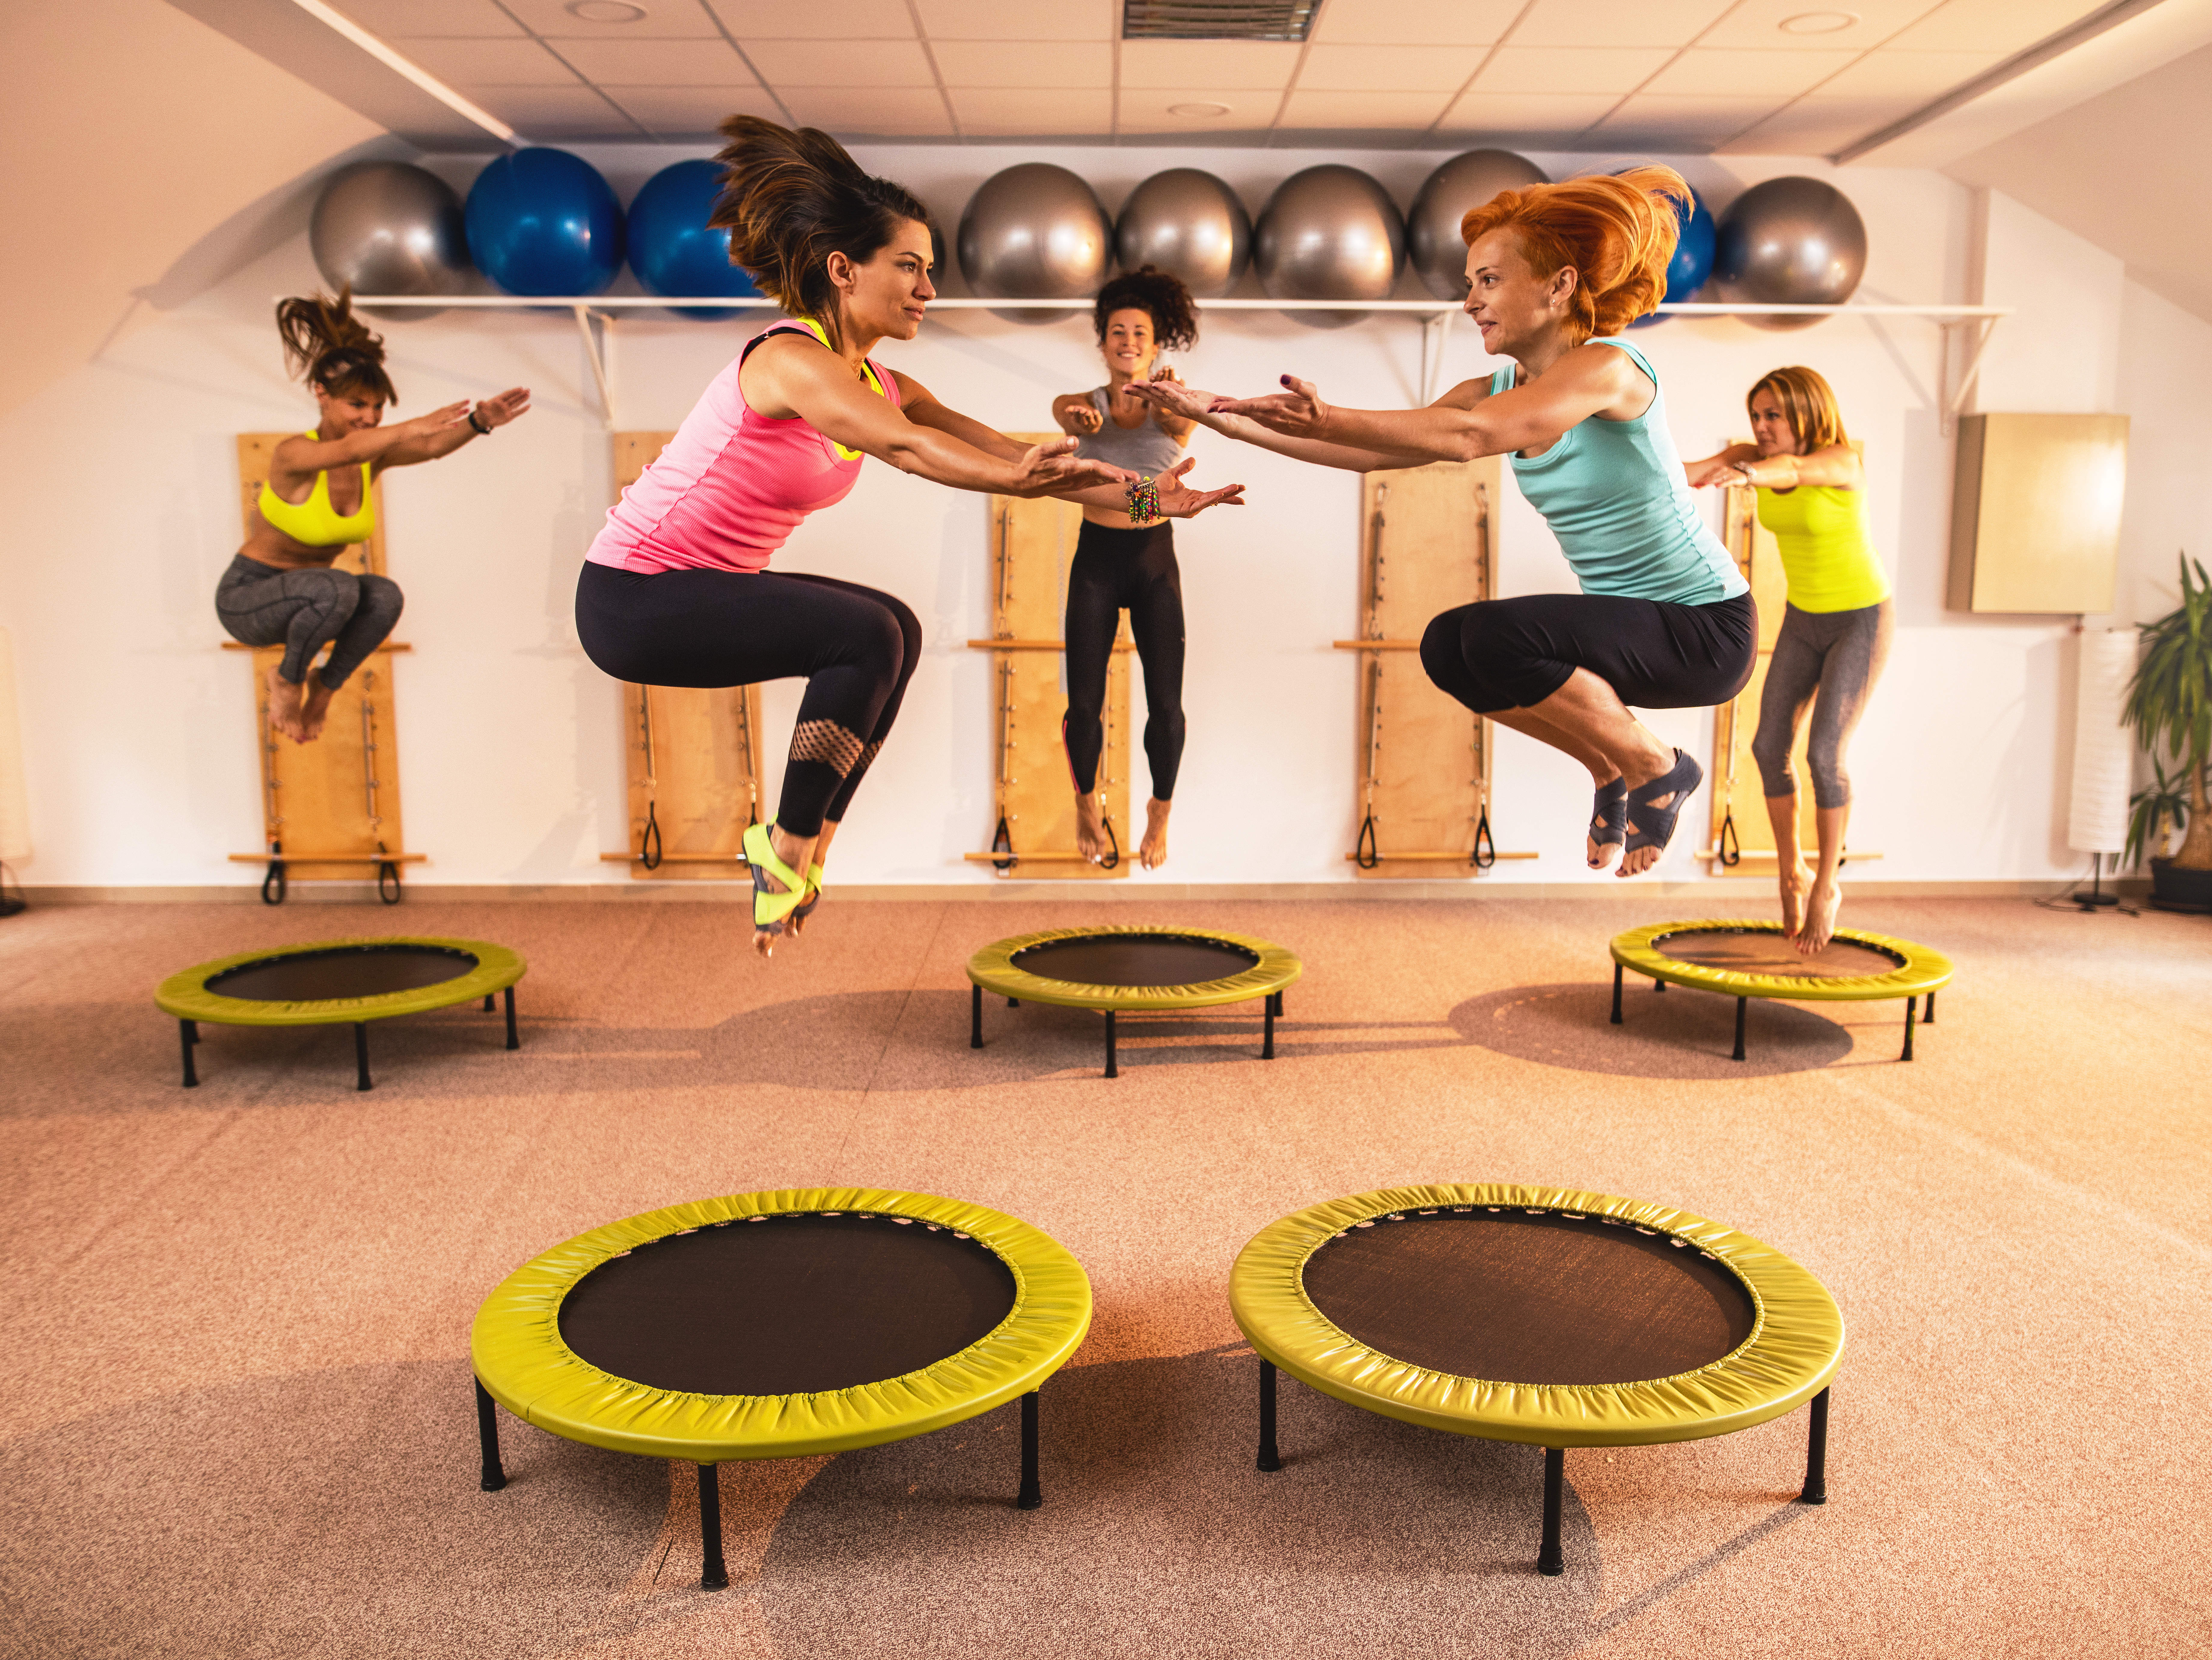 7 roliga och hälsosamma fördelar med trampolinsporter